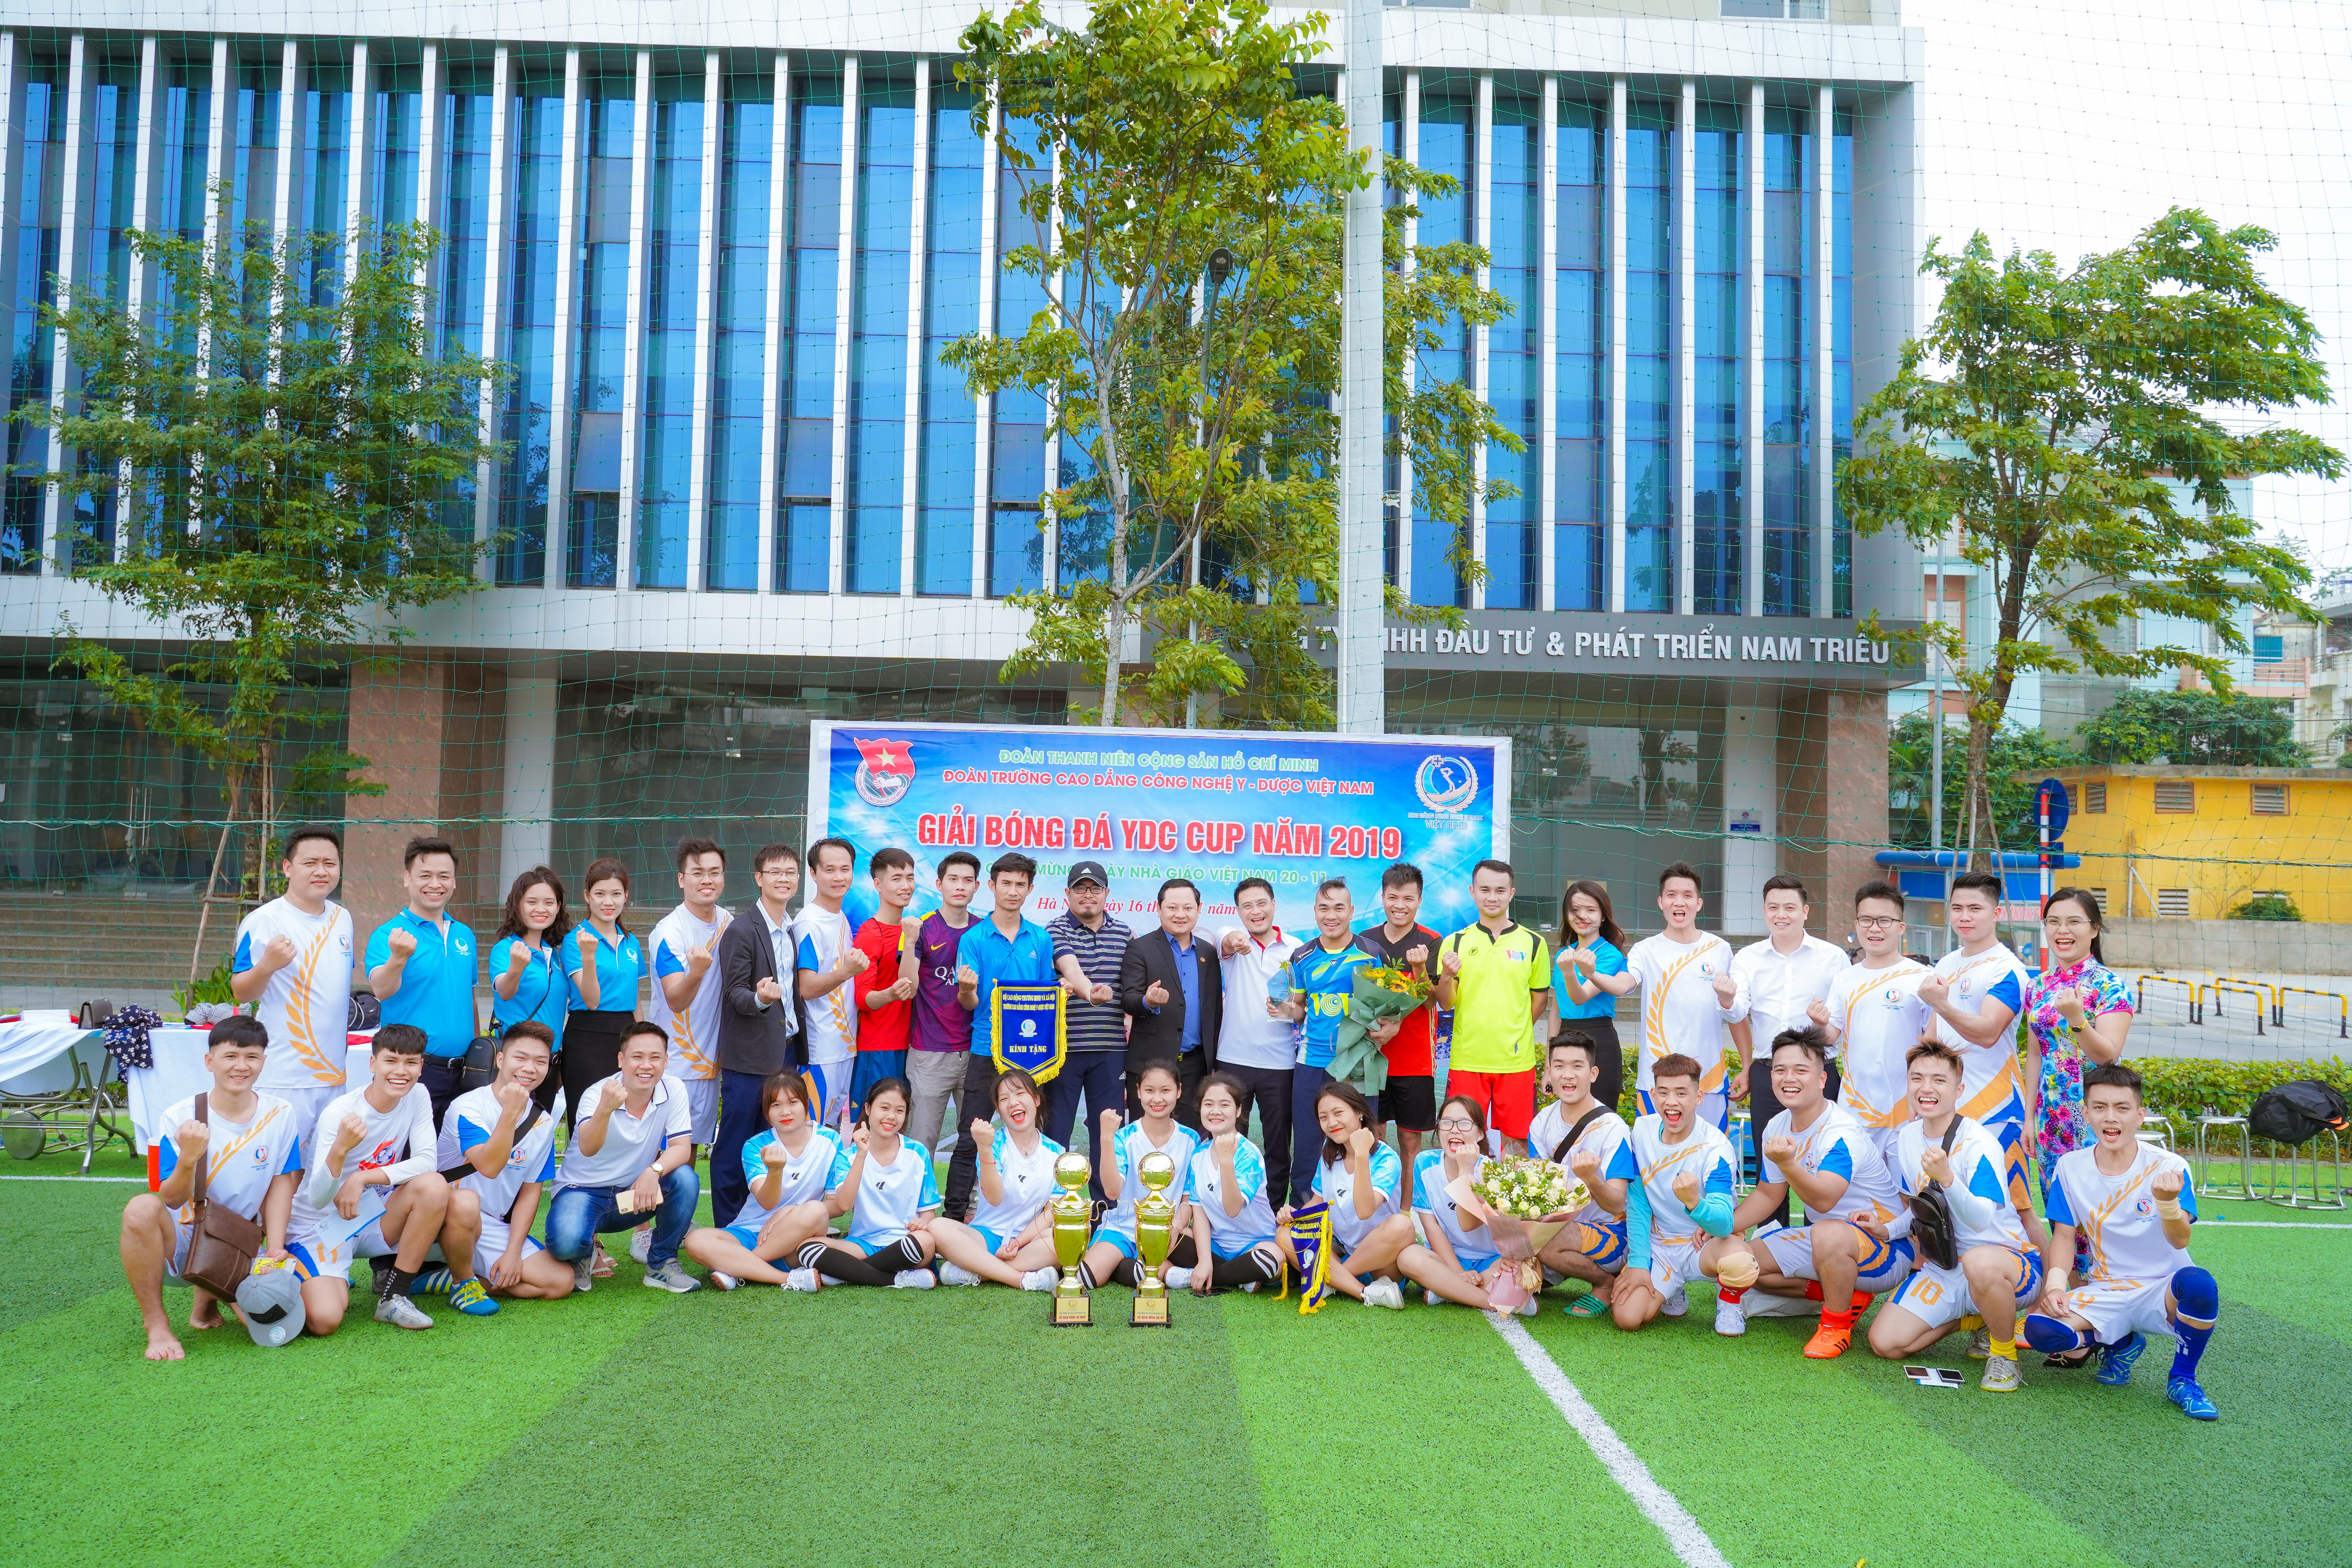 Thầy Nguyễn Văn Tuấn - Hiệu trường Nhà trường chụp ảnh lưu niệm với các đội bóng